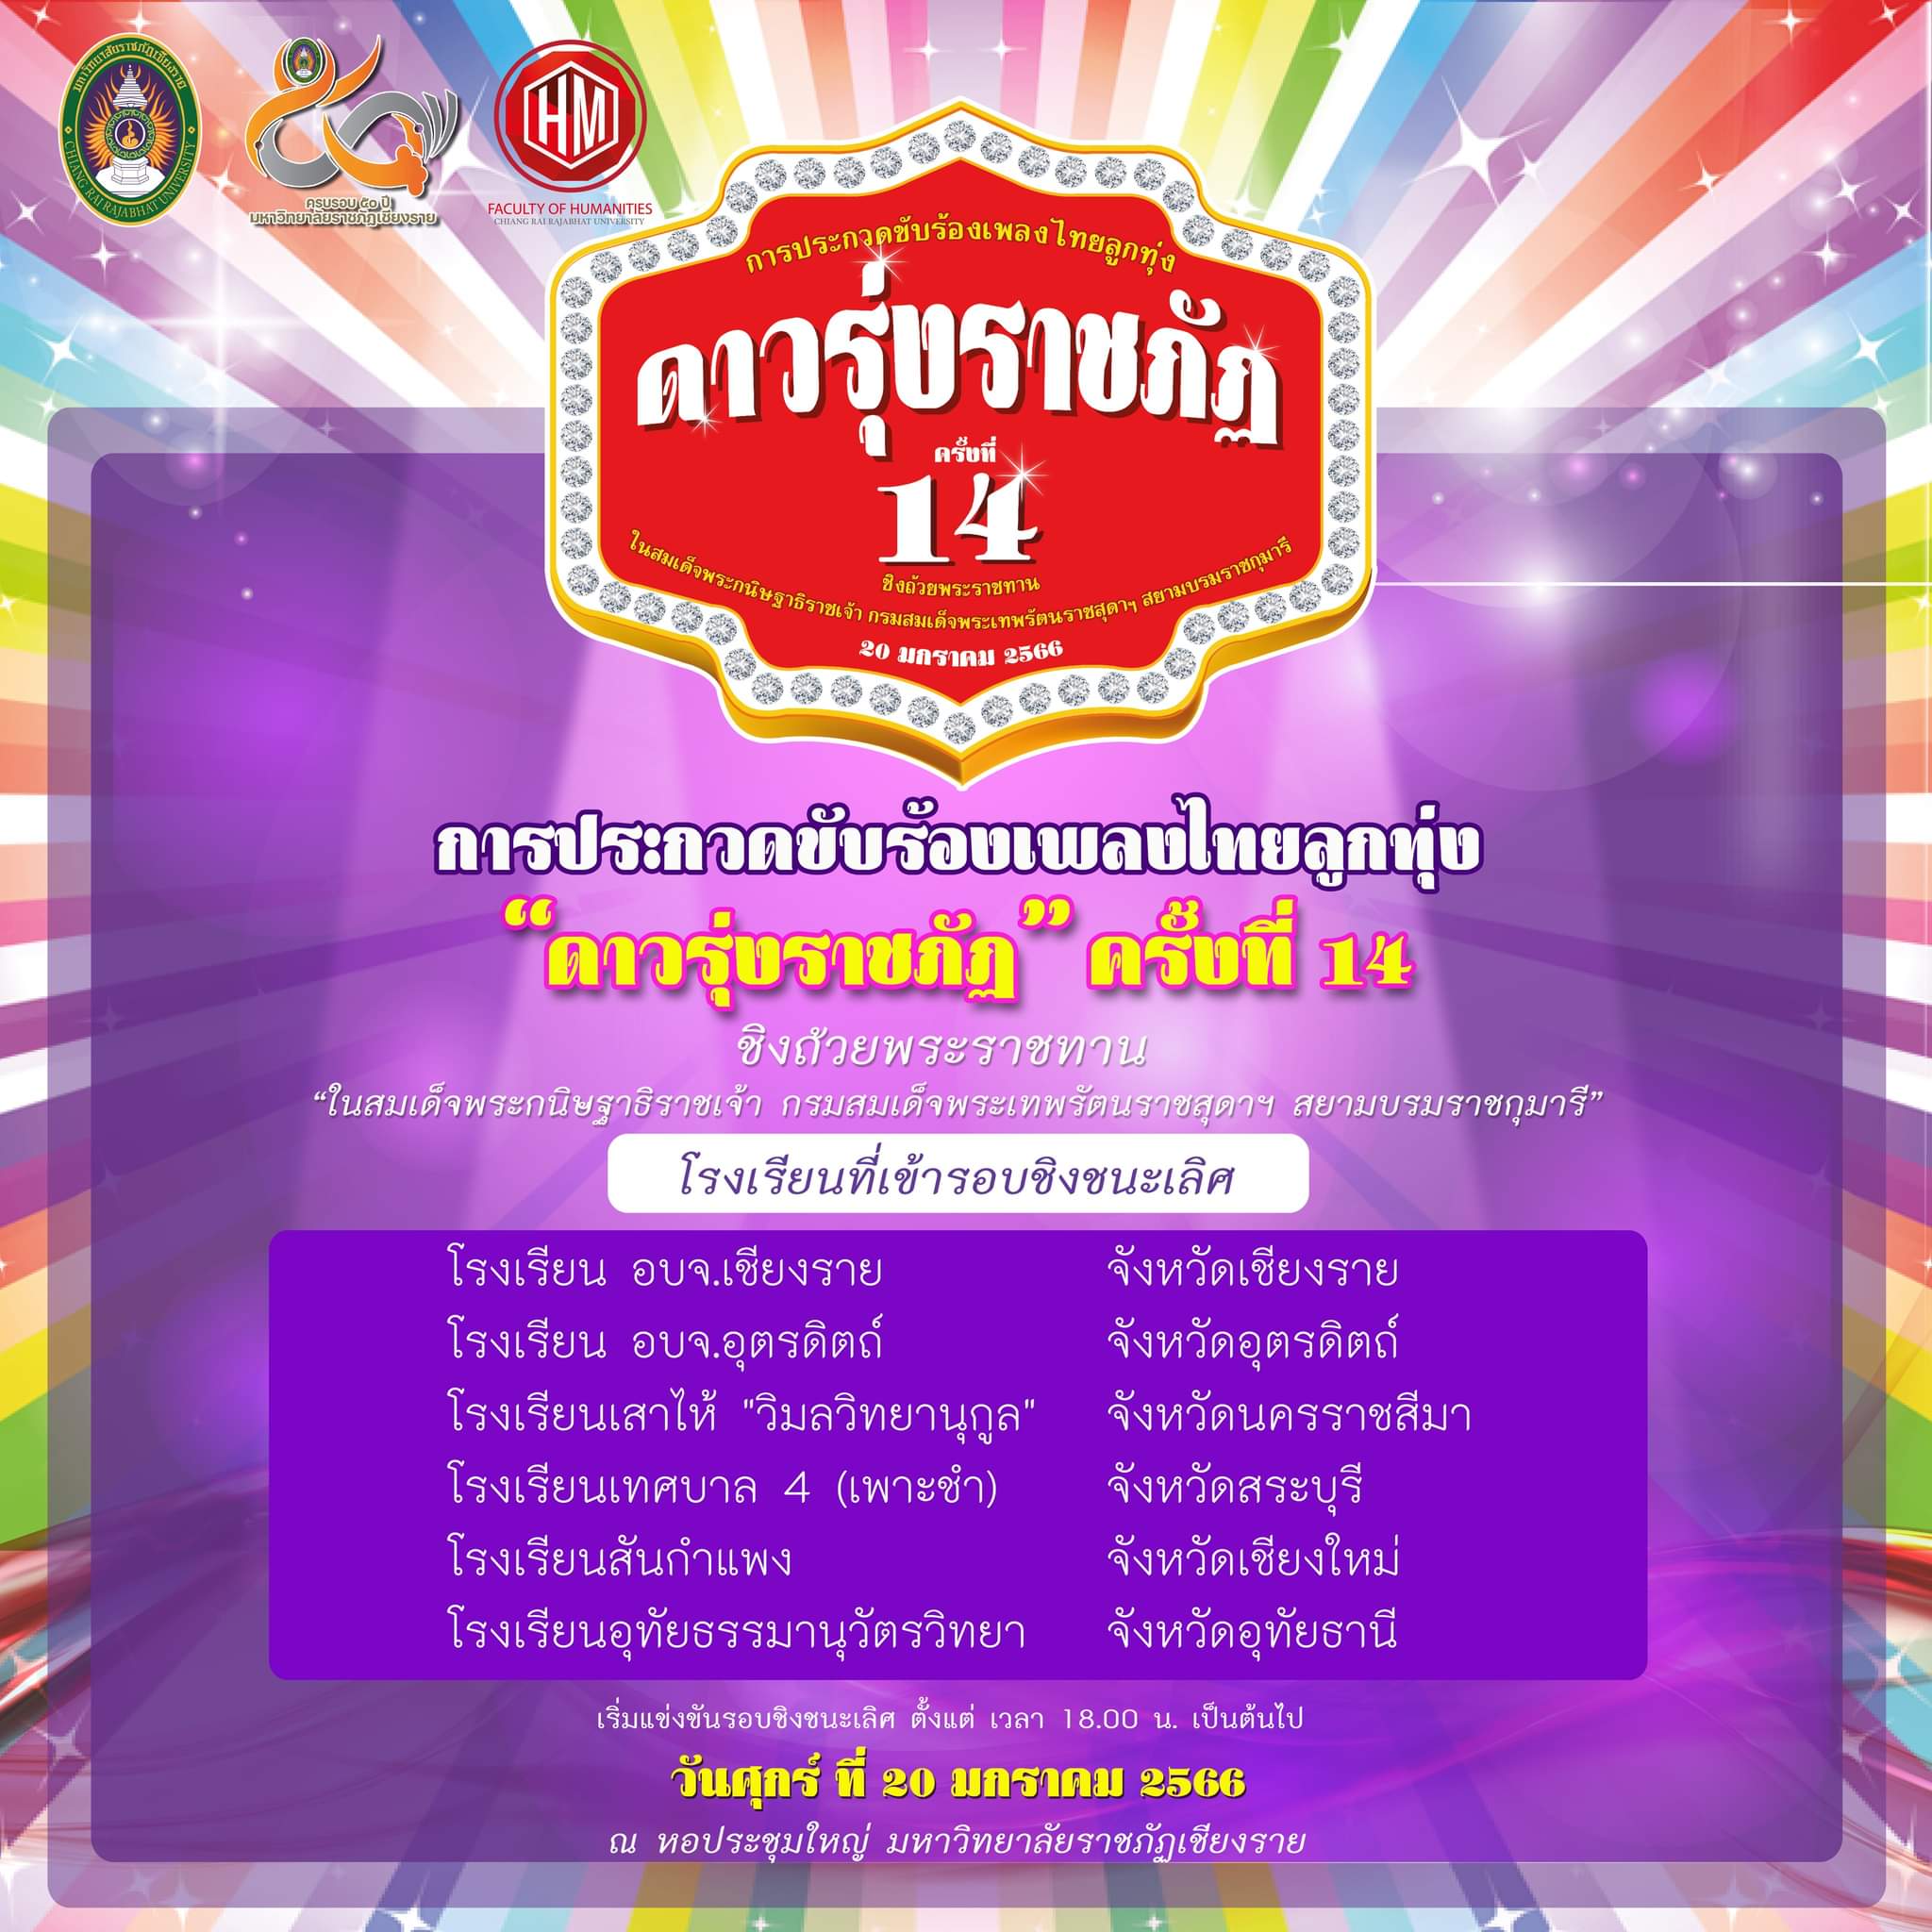 ประกาศผลผู้เข้ารอบการแข่งขันการประกวดขับร้องเพลงไทยลูกทุ่ง “ดาวรุ่งราชภัฏ ครั้งที่ 14”